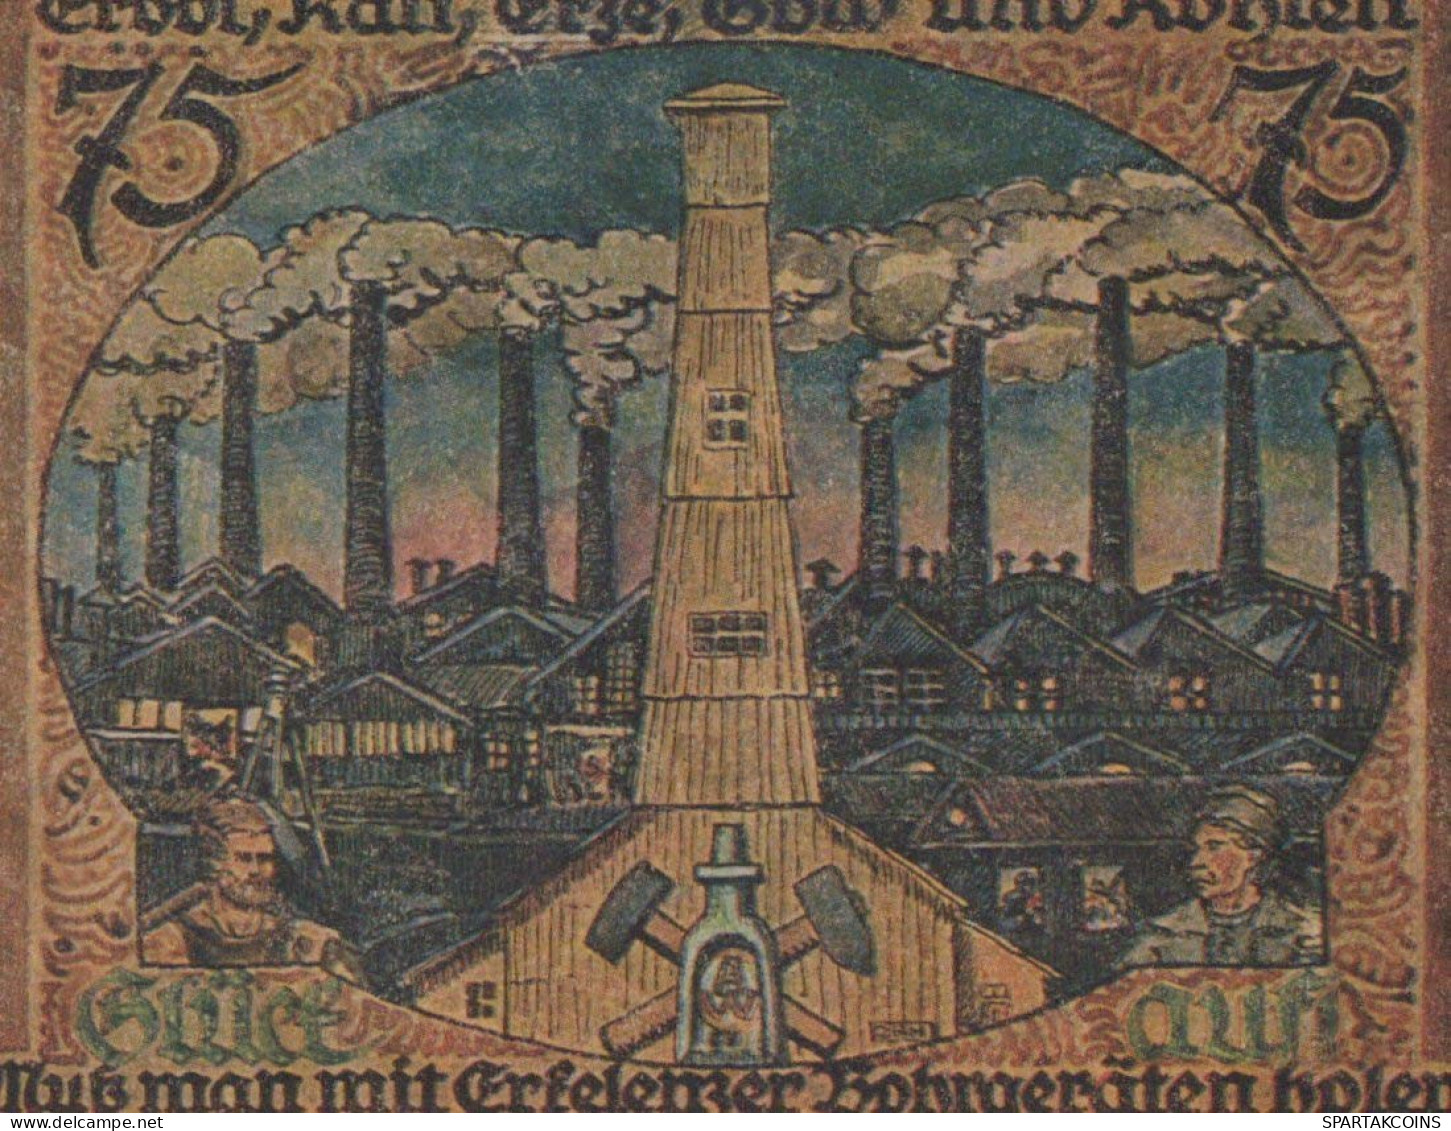 75 PFENNIG 1921 Stadt ERKELENZ Rhine UNC DEUTSCHLAND Notgeld Banknote #PB332 - Lokale Ausgaben